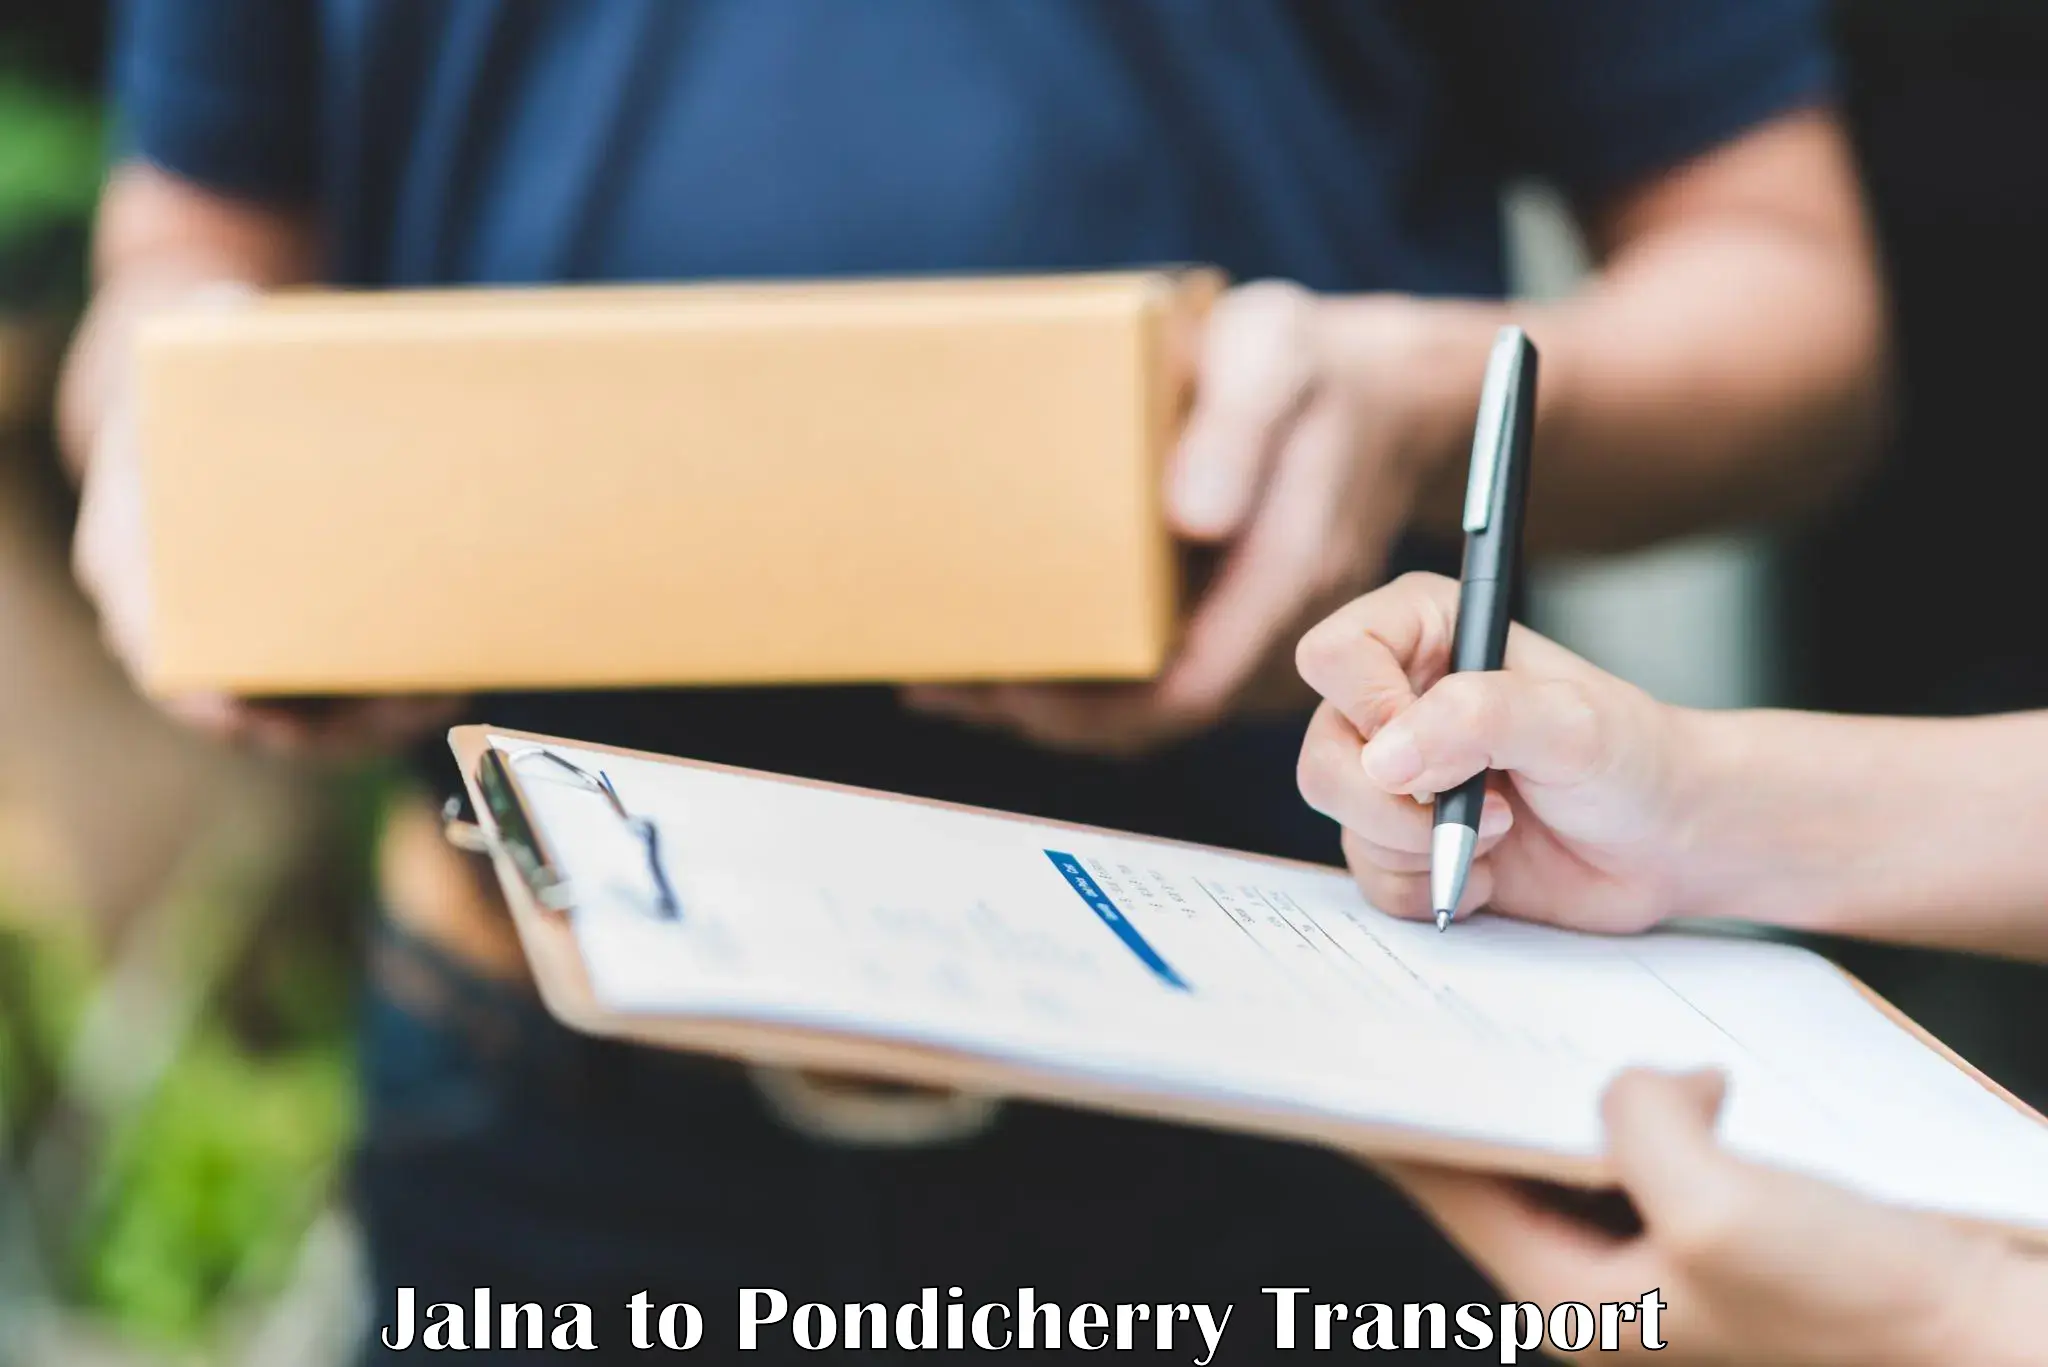 Daily parcel service transport Jalna to Pondicherry